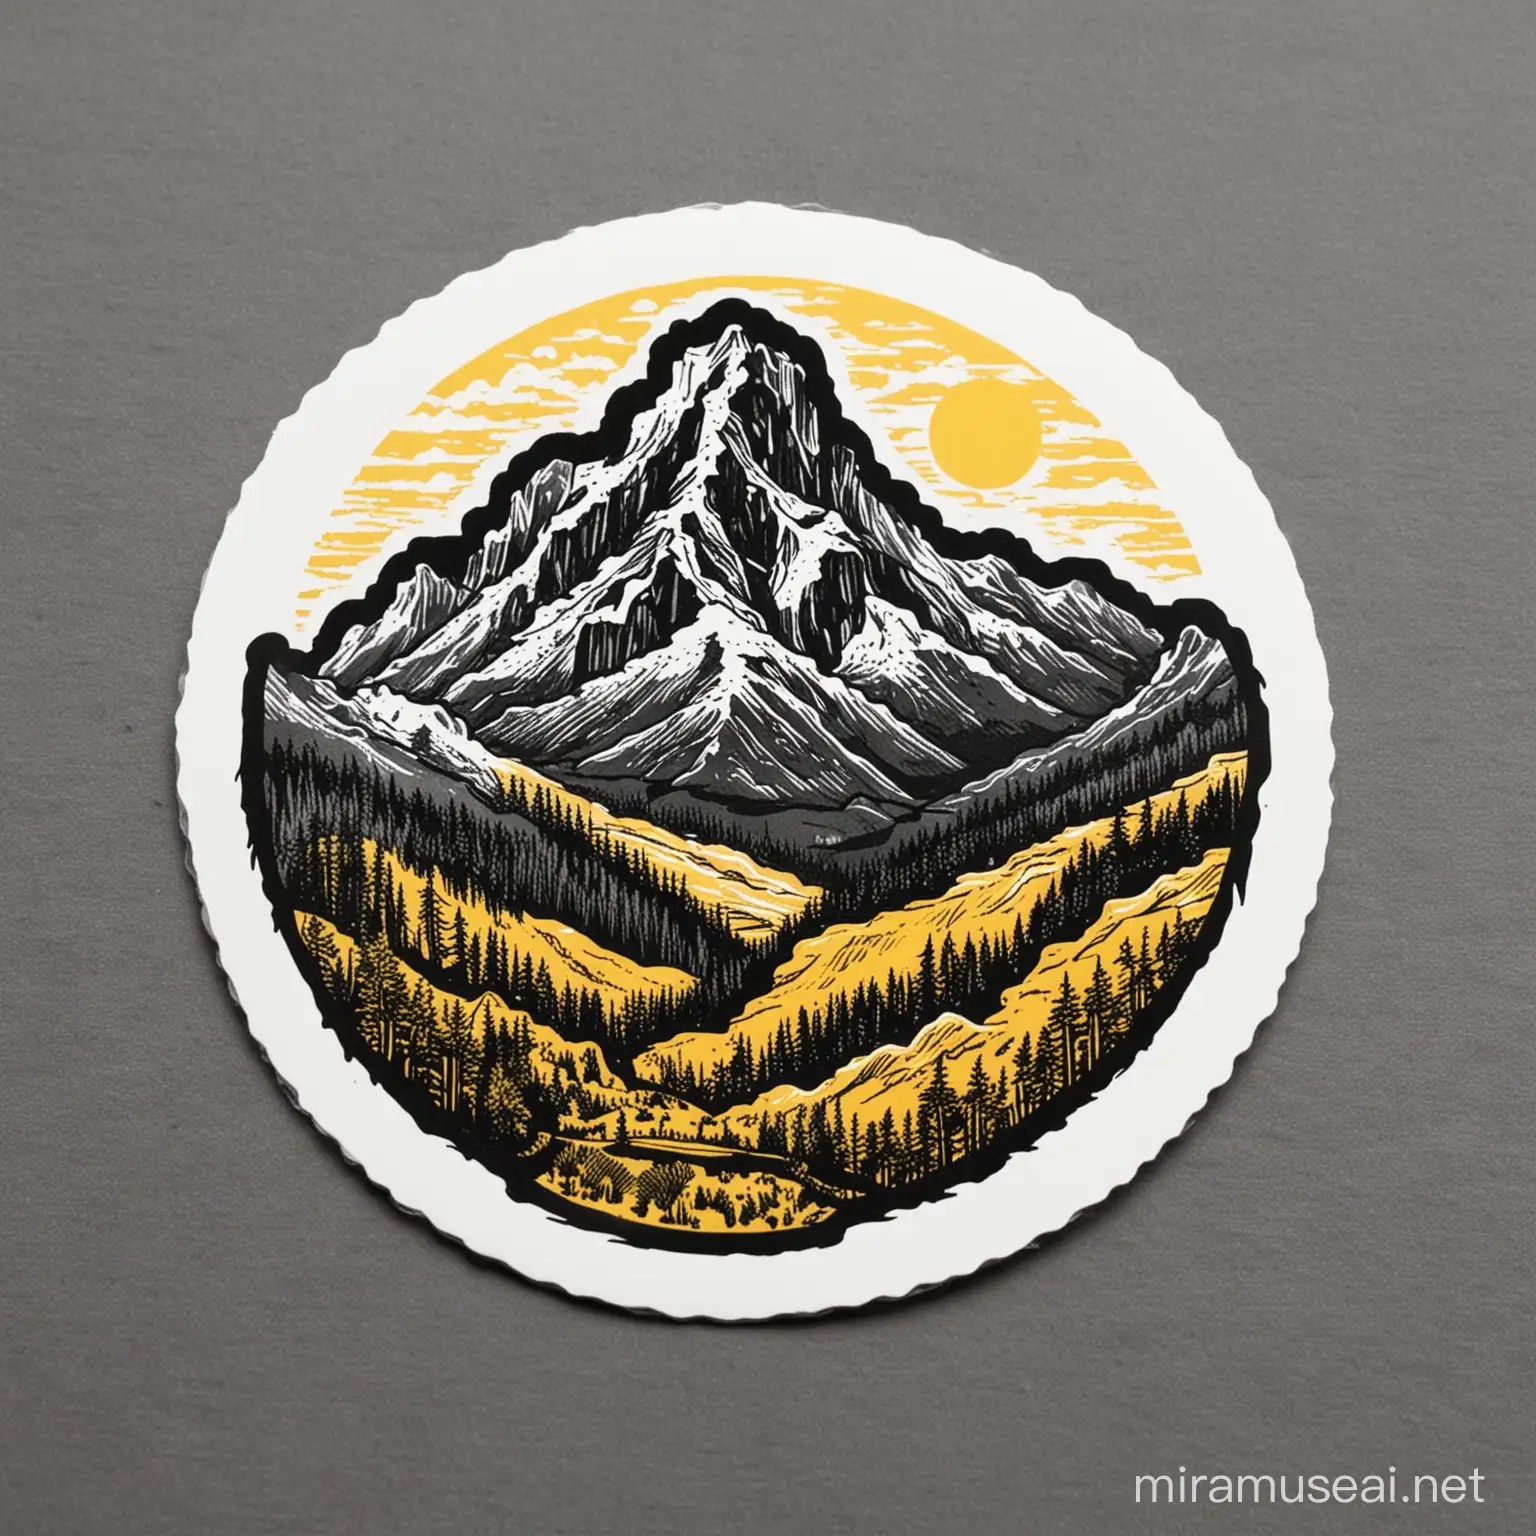 Monochrome Sticker with Yellow Mountain Text